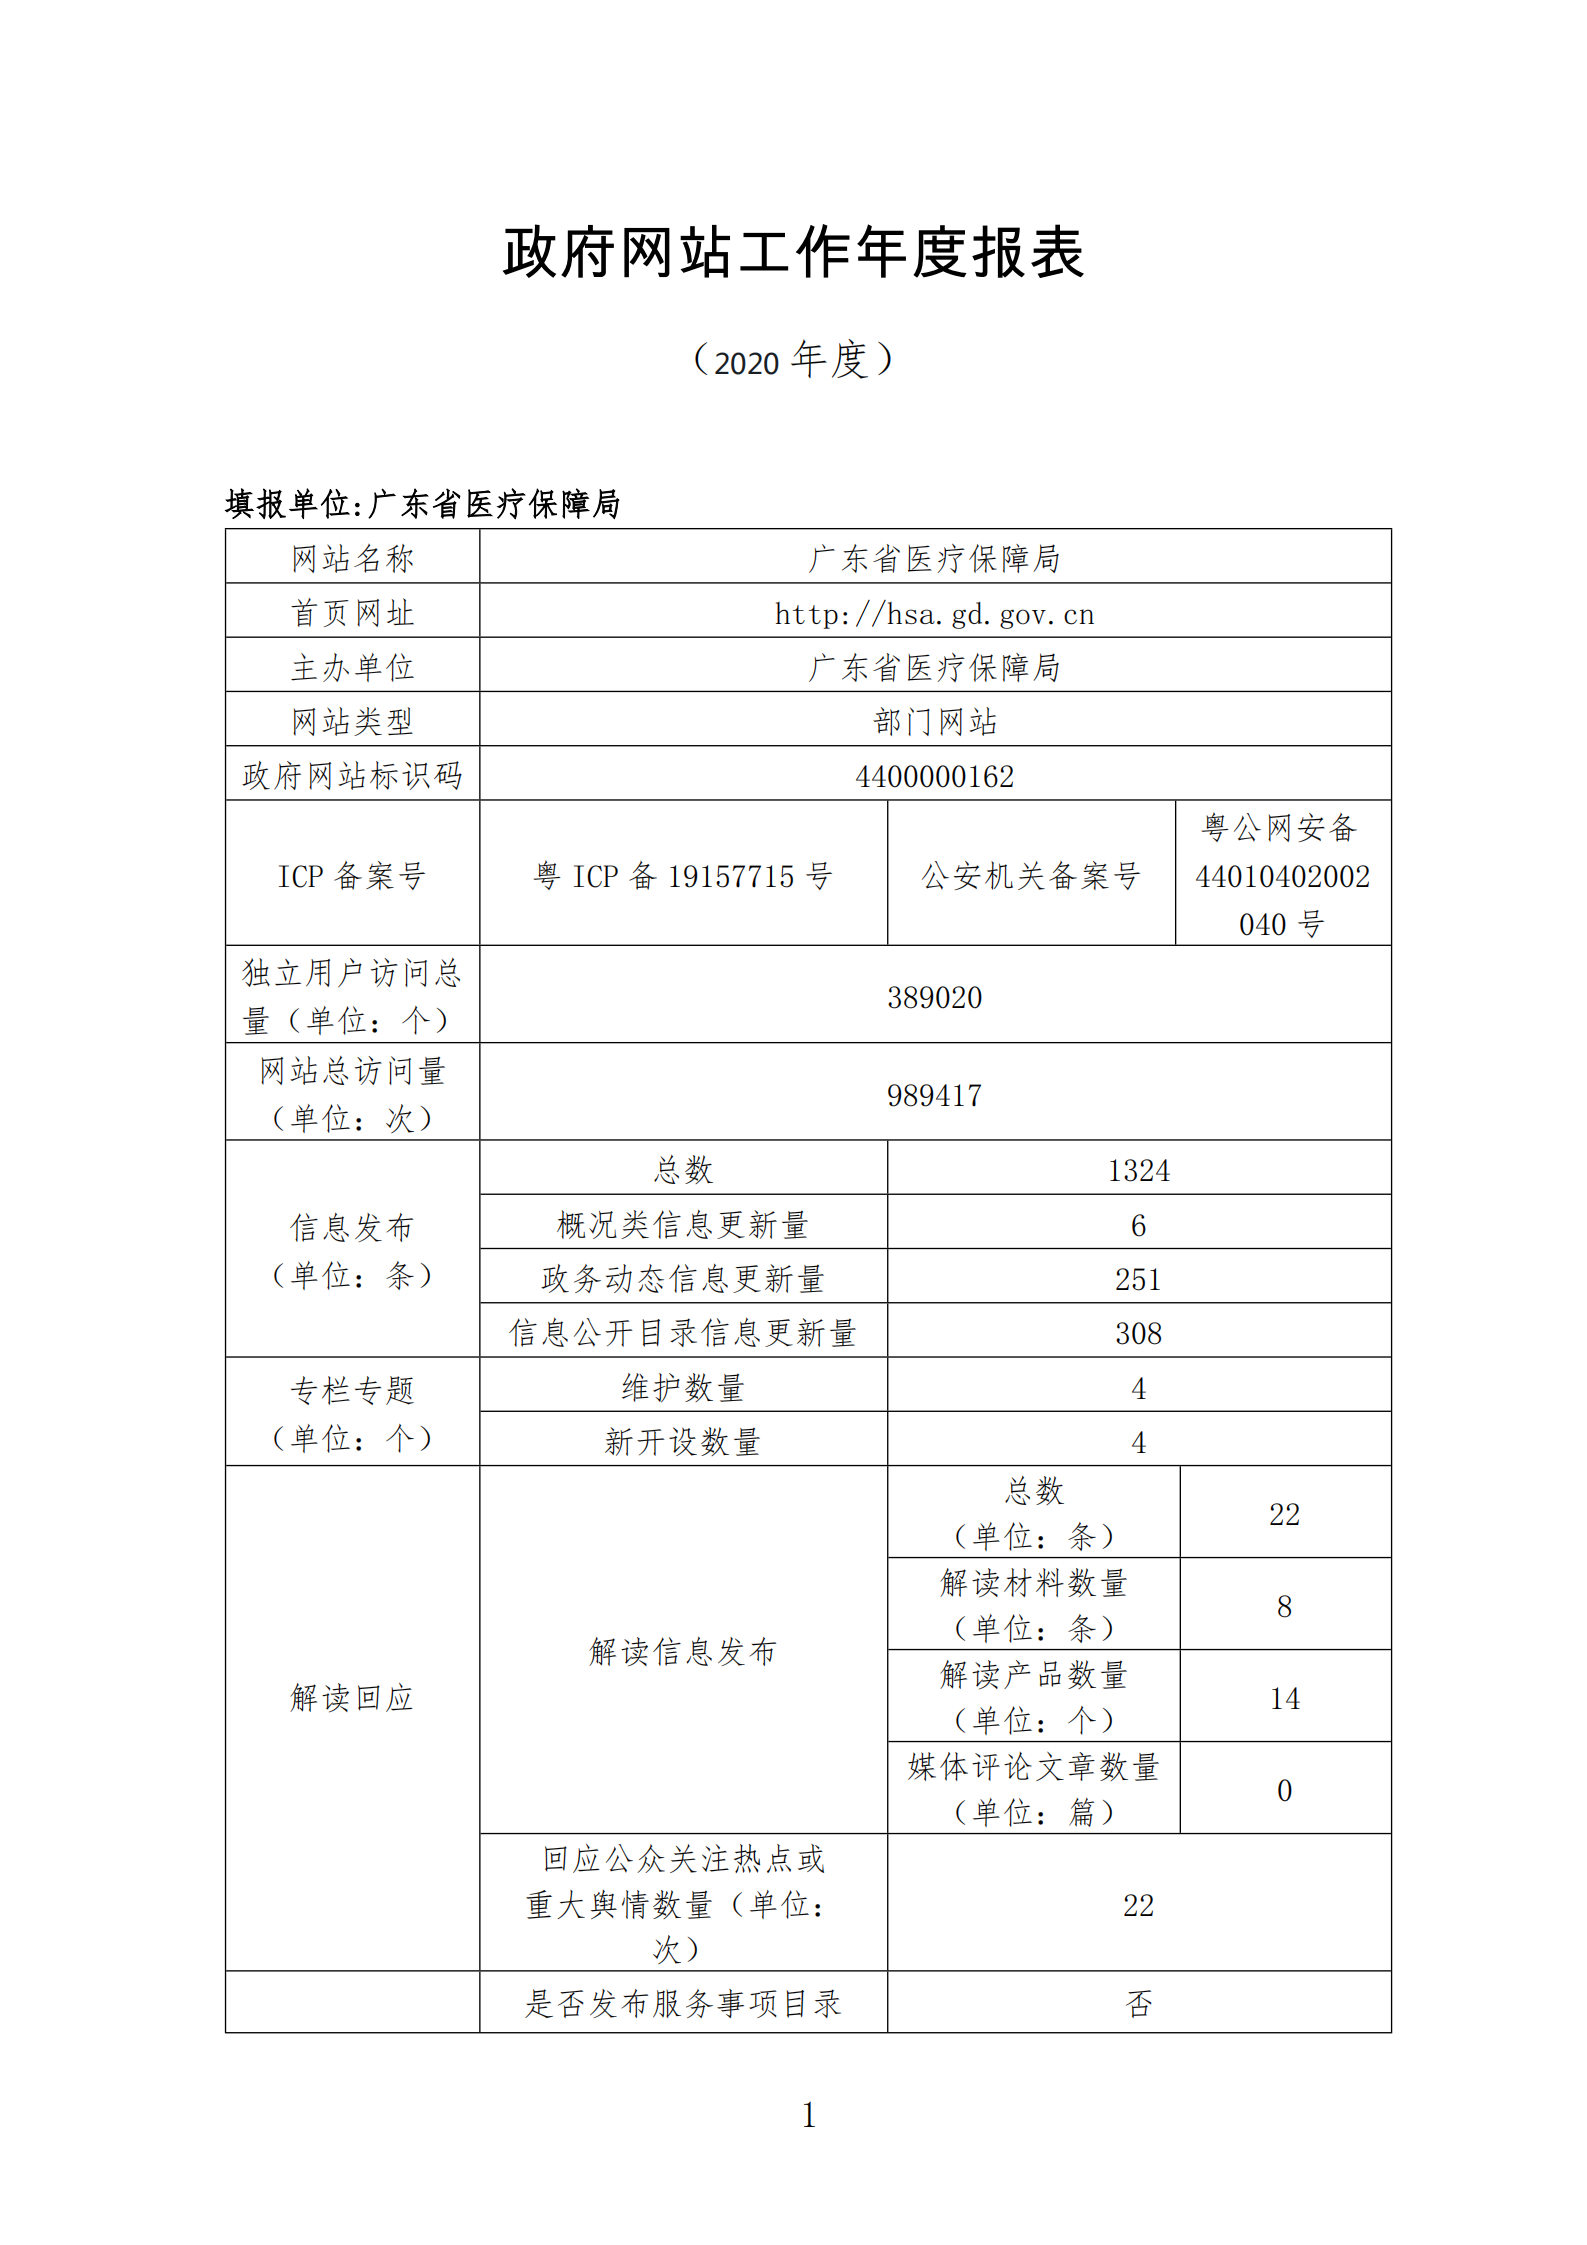 广东省医疗保障局政府网站工作报表（2020年度）_00.png